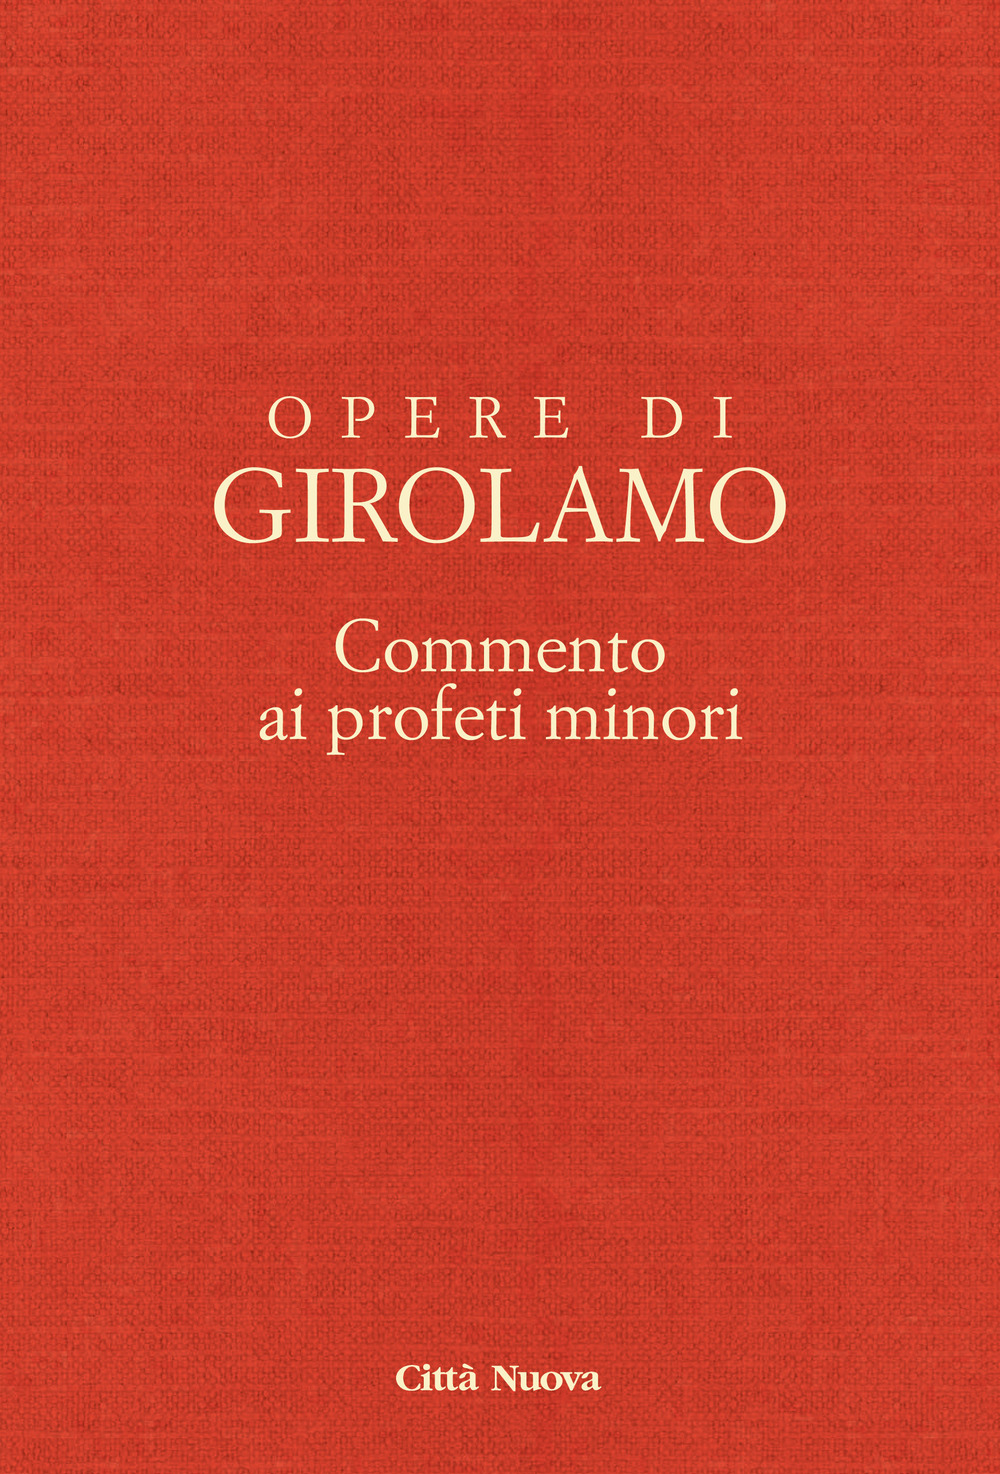 Opere di Girolamo. Vol. 8: Commento ai profeti minori